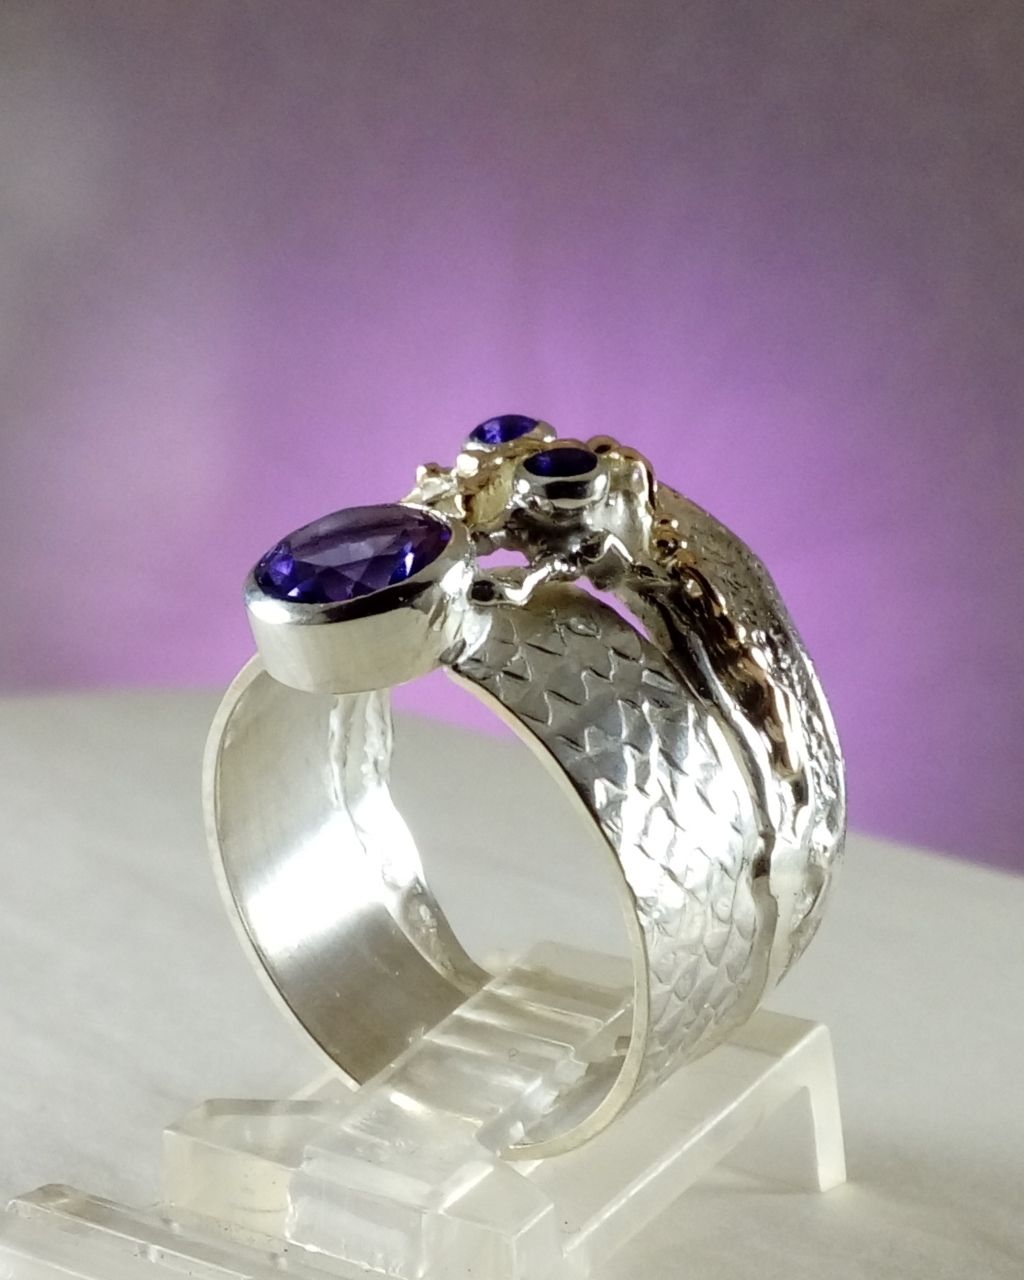 hvor kan man købe håndlavede smykker, hvor man kan købe håndlavede ringe online, købe håndlavede ring med ametyst, sølv og 14 karat guld smykker med ametyst, Gregory Pyra Piro ring 6820, håndlavede smykker med hjemlevering